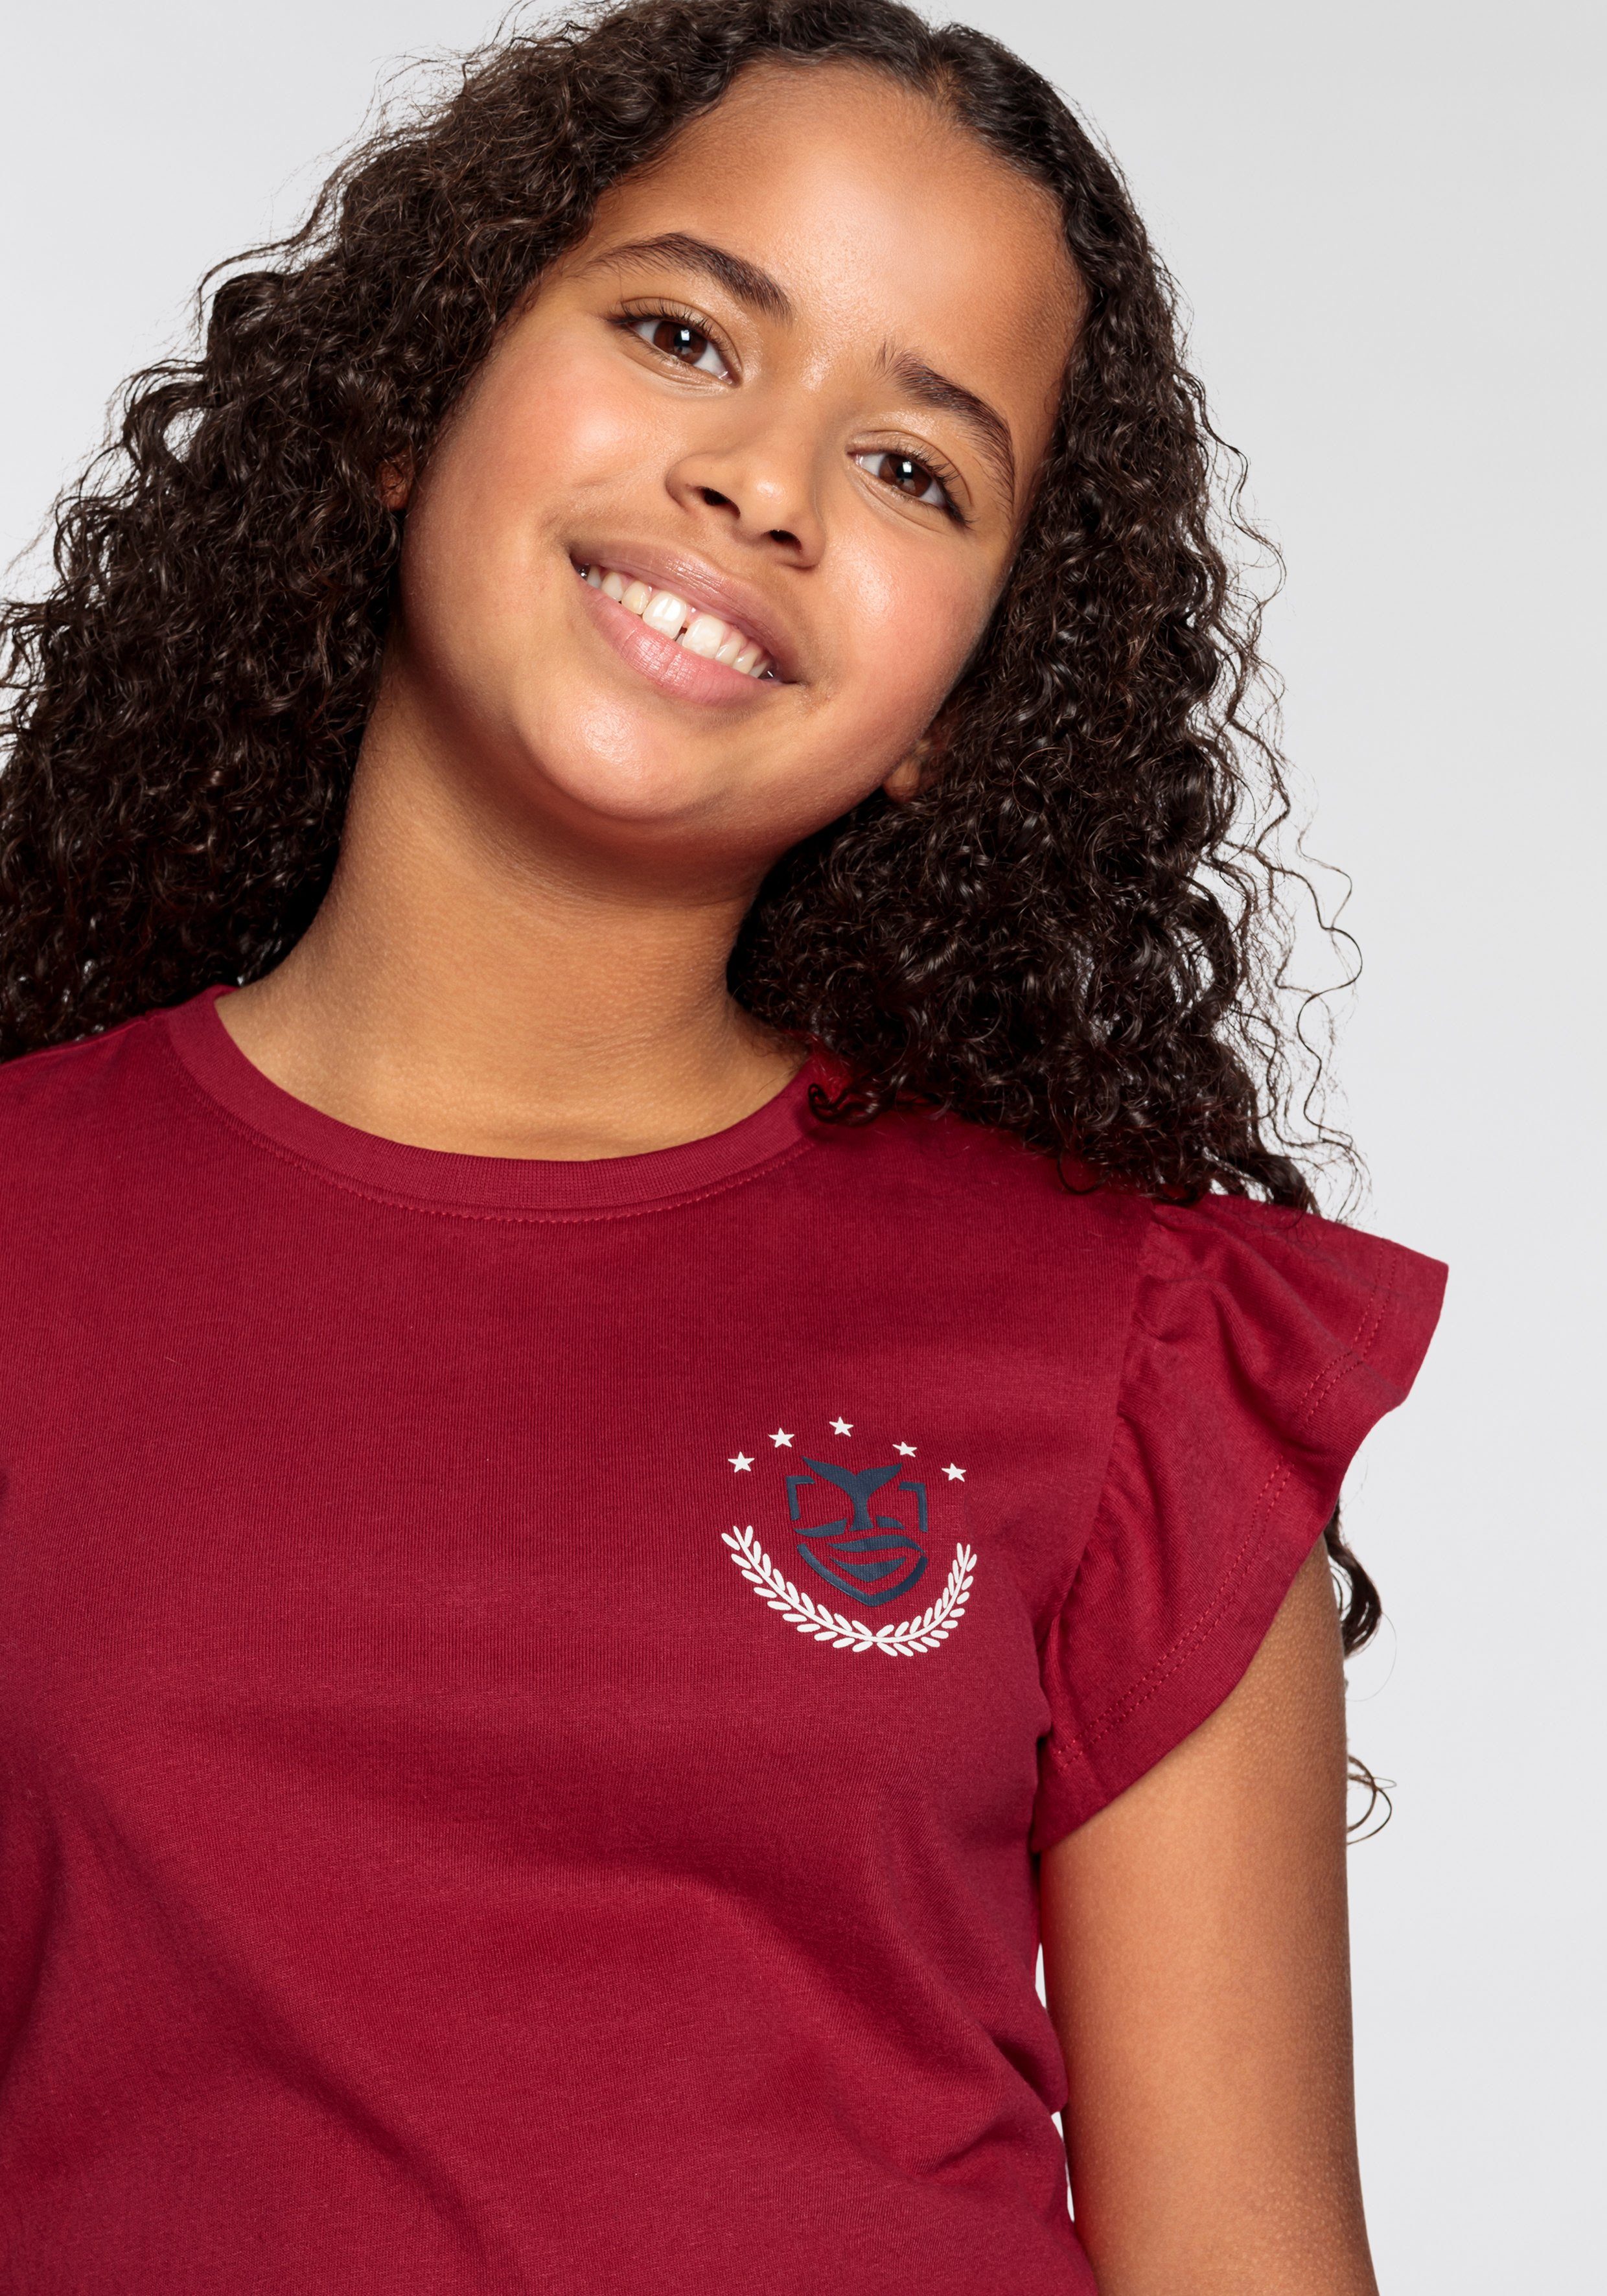 DELMAO T-Shirt für Rüschen Mädchen mit